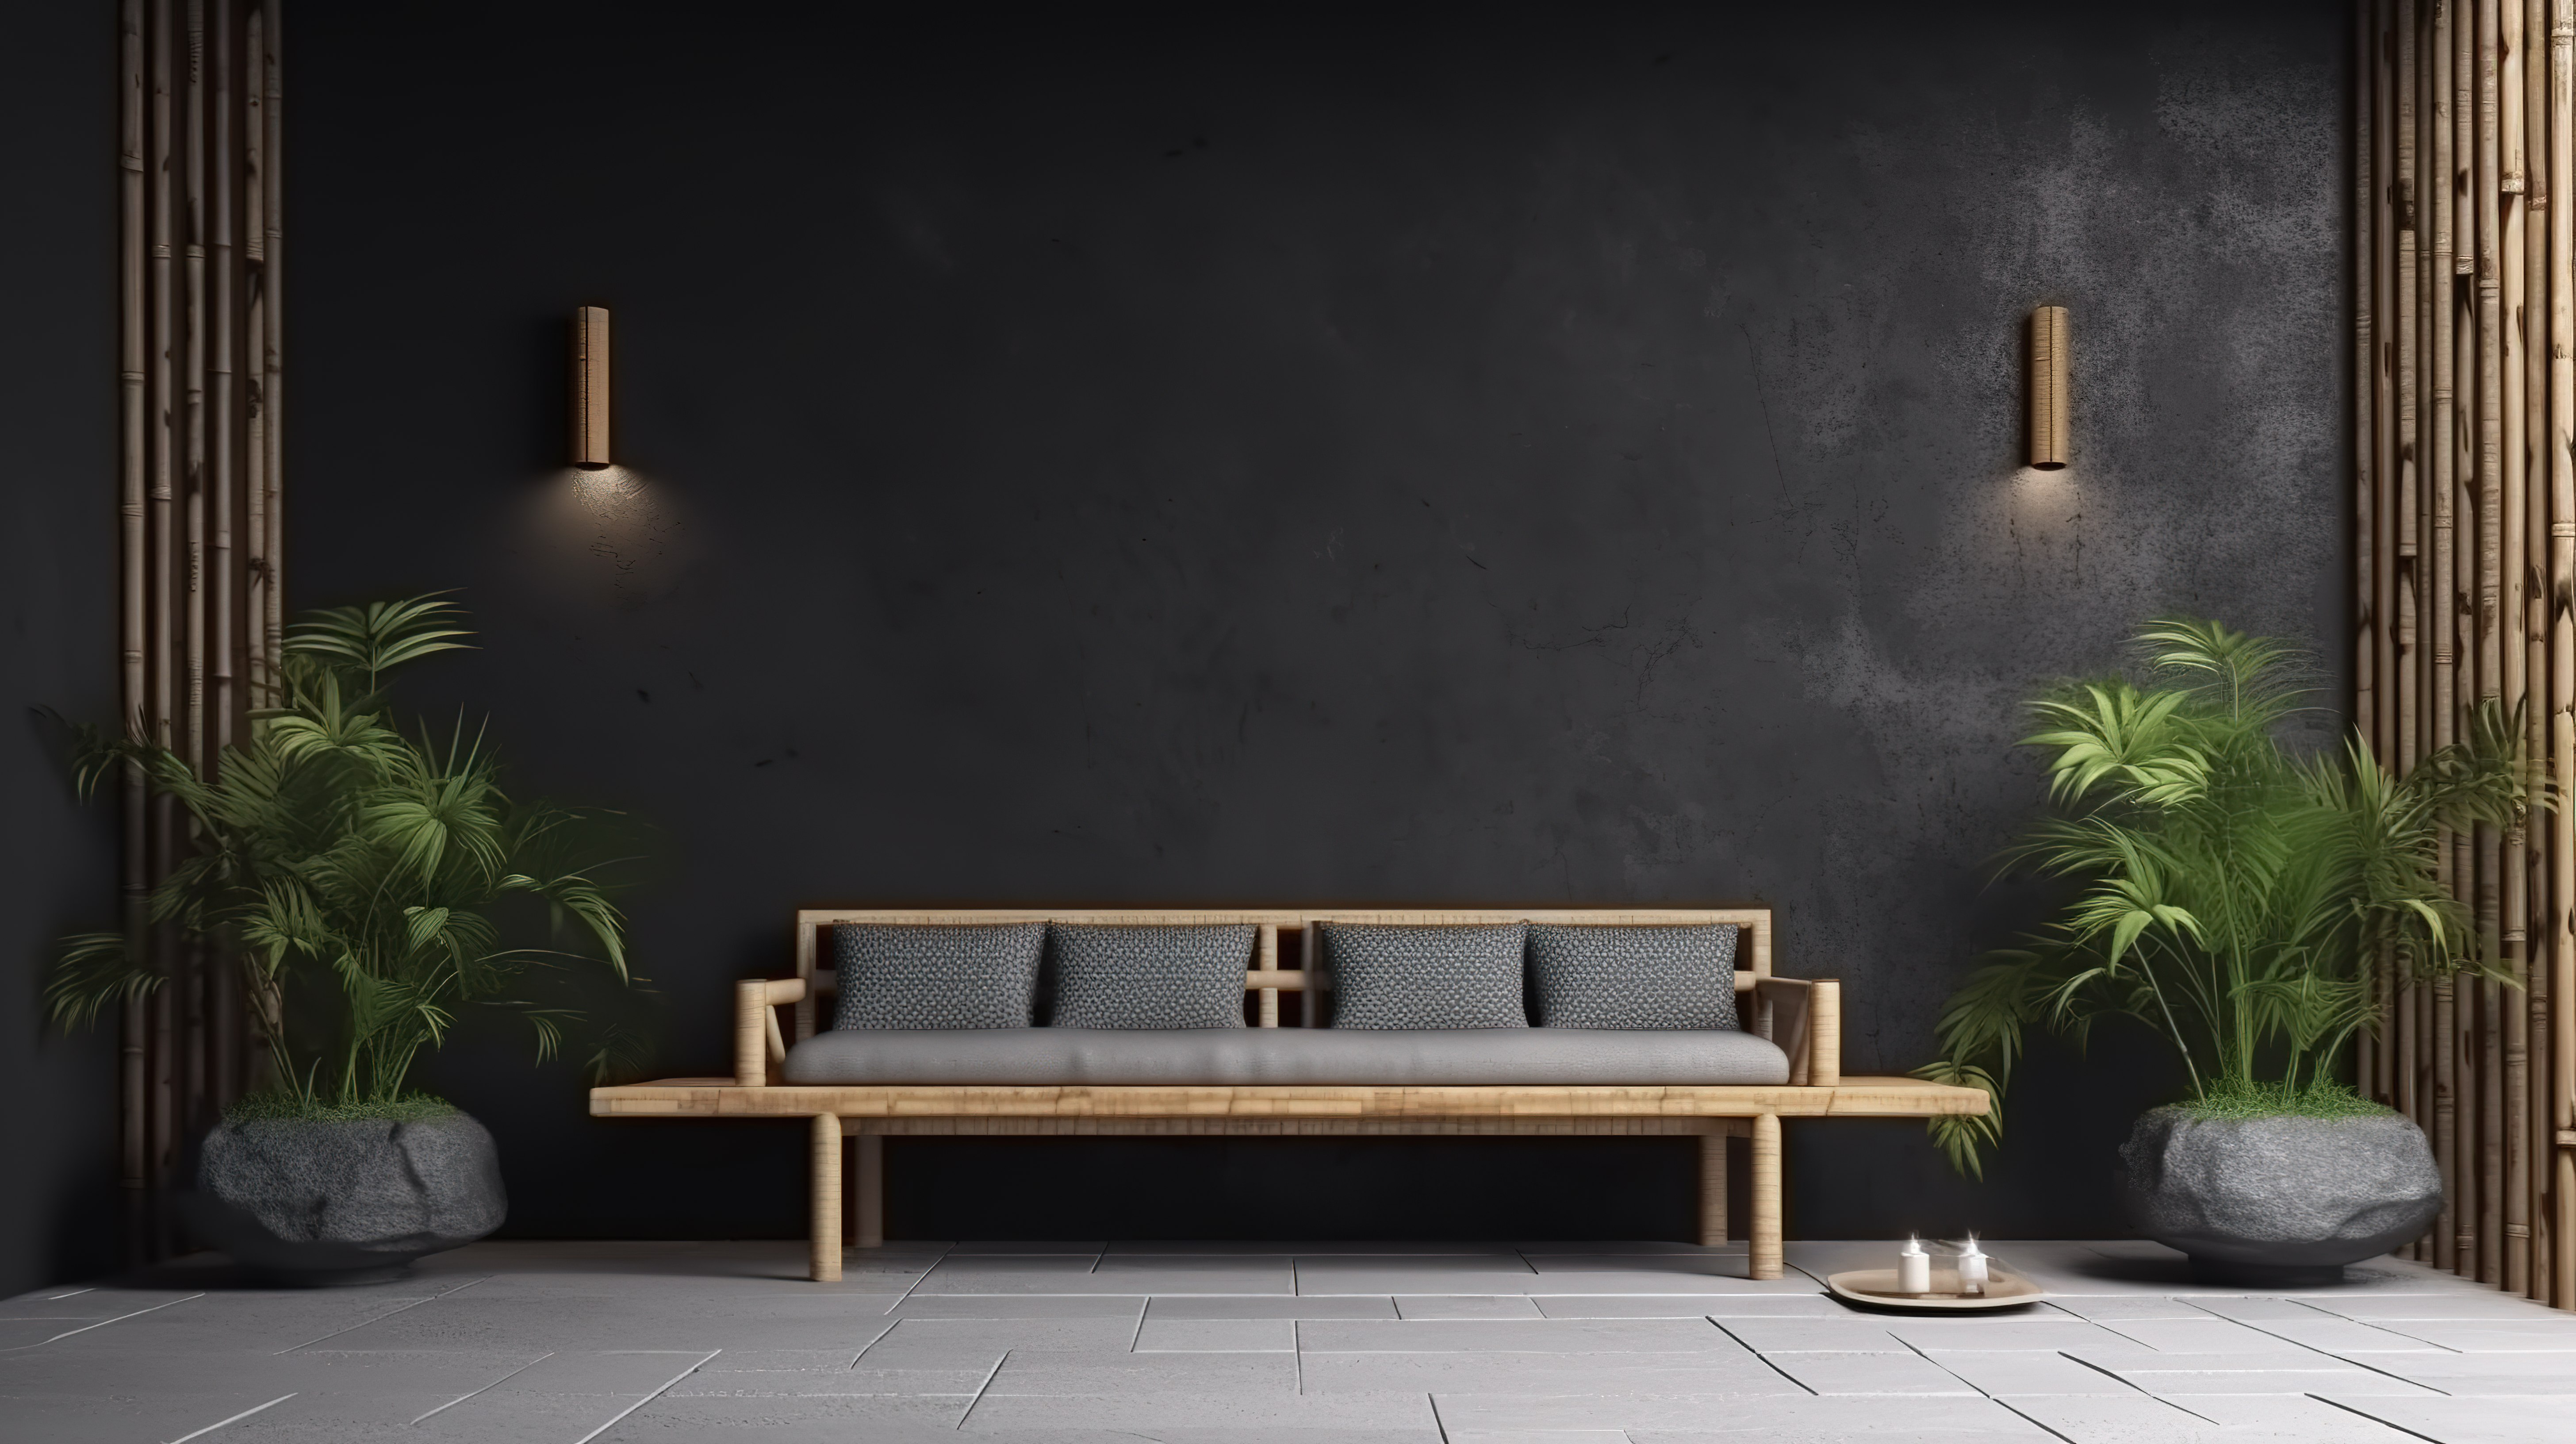 抛光的水泥墙和竹沙发在 3D 渲染中营造出一个放松的半户外避难所图片